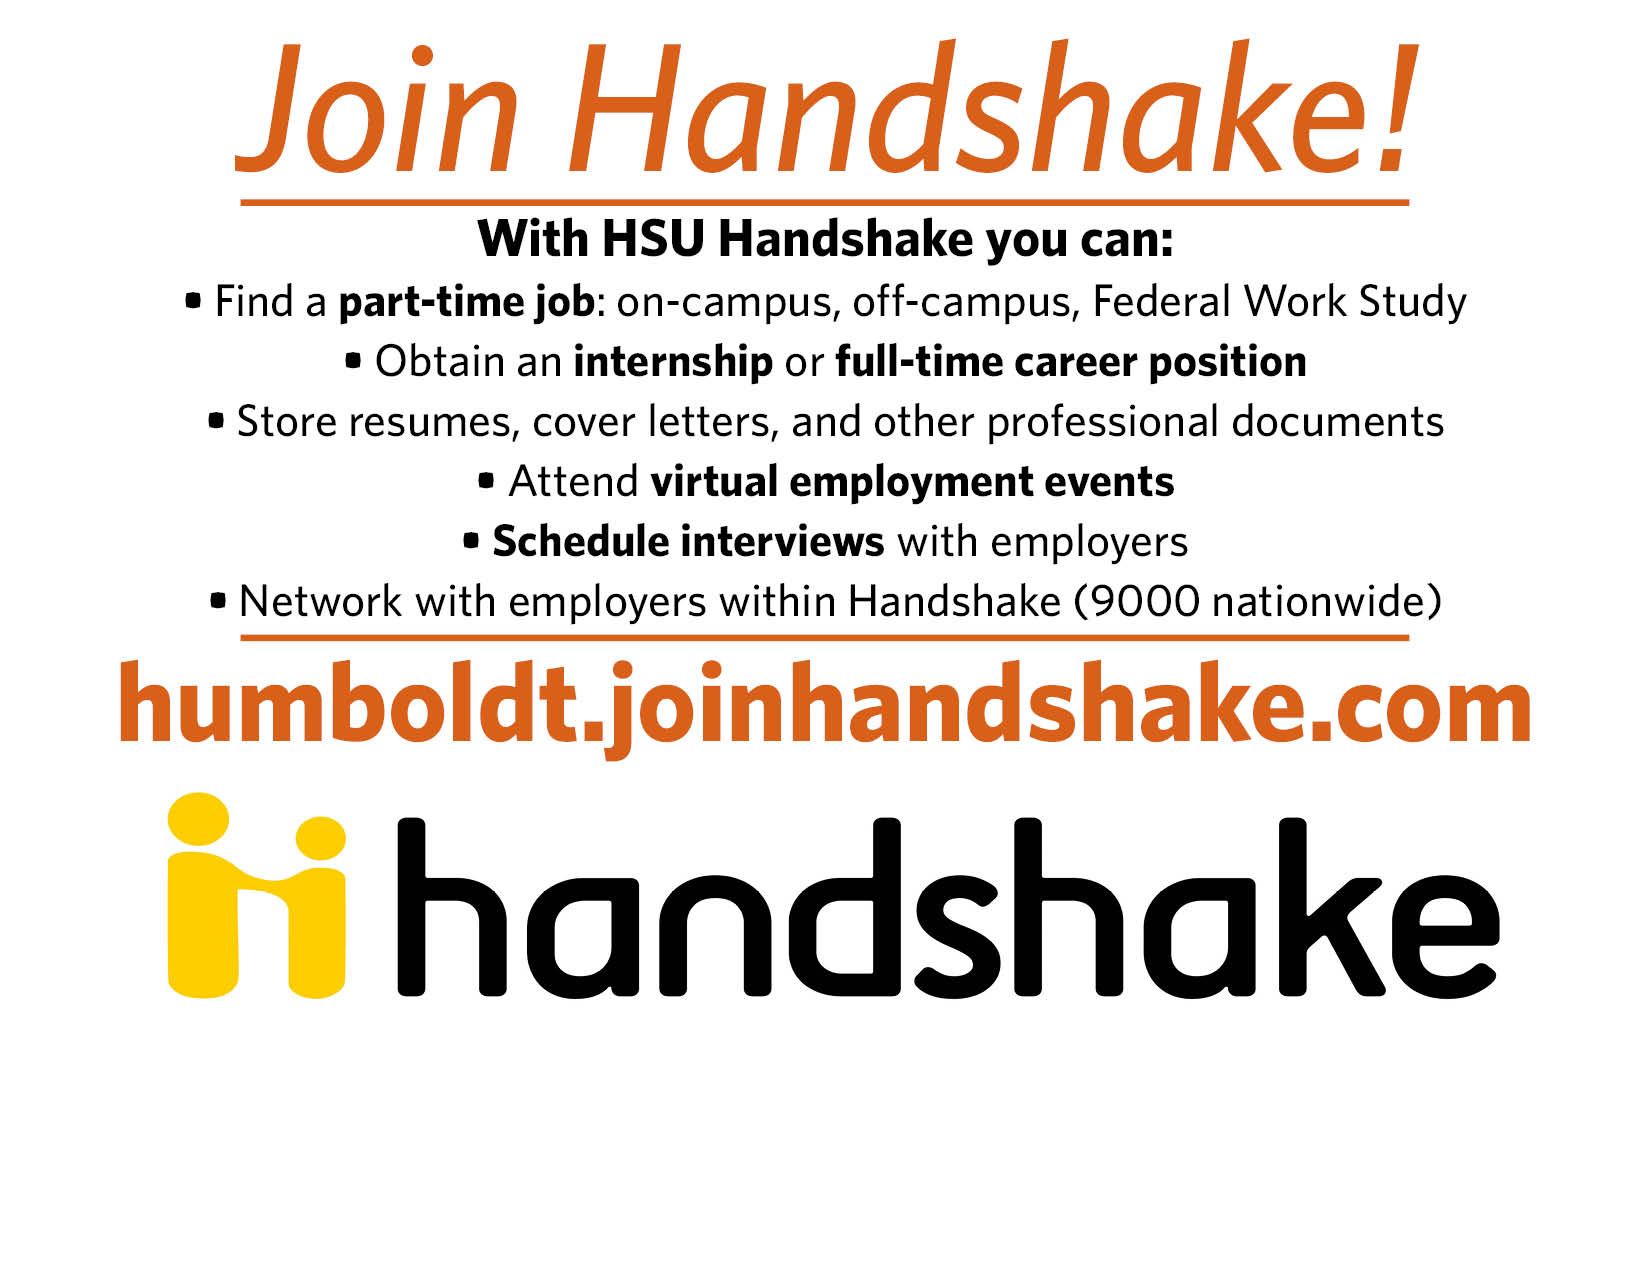 humboldt.joinhandshake.com to register for handshake